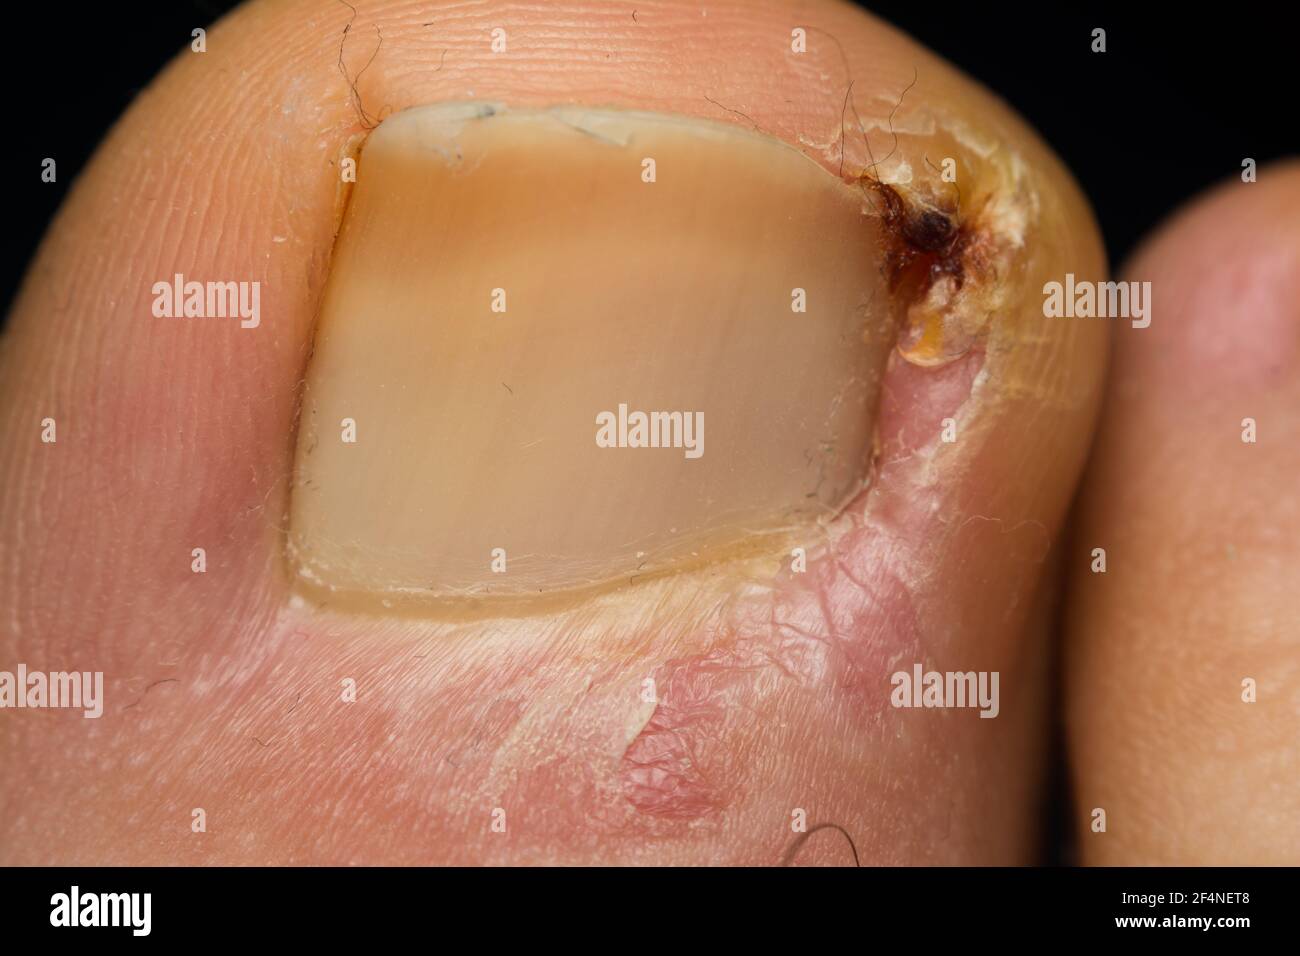 photo de gros plan d'une infection à la caille chez l'homme Banque D'Images